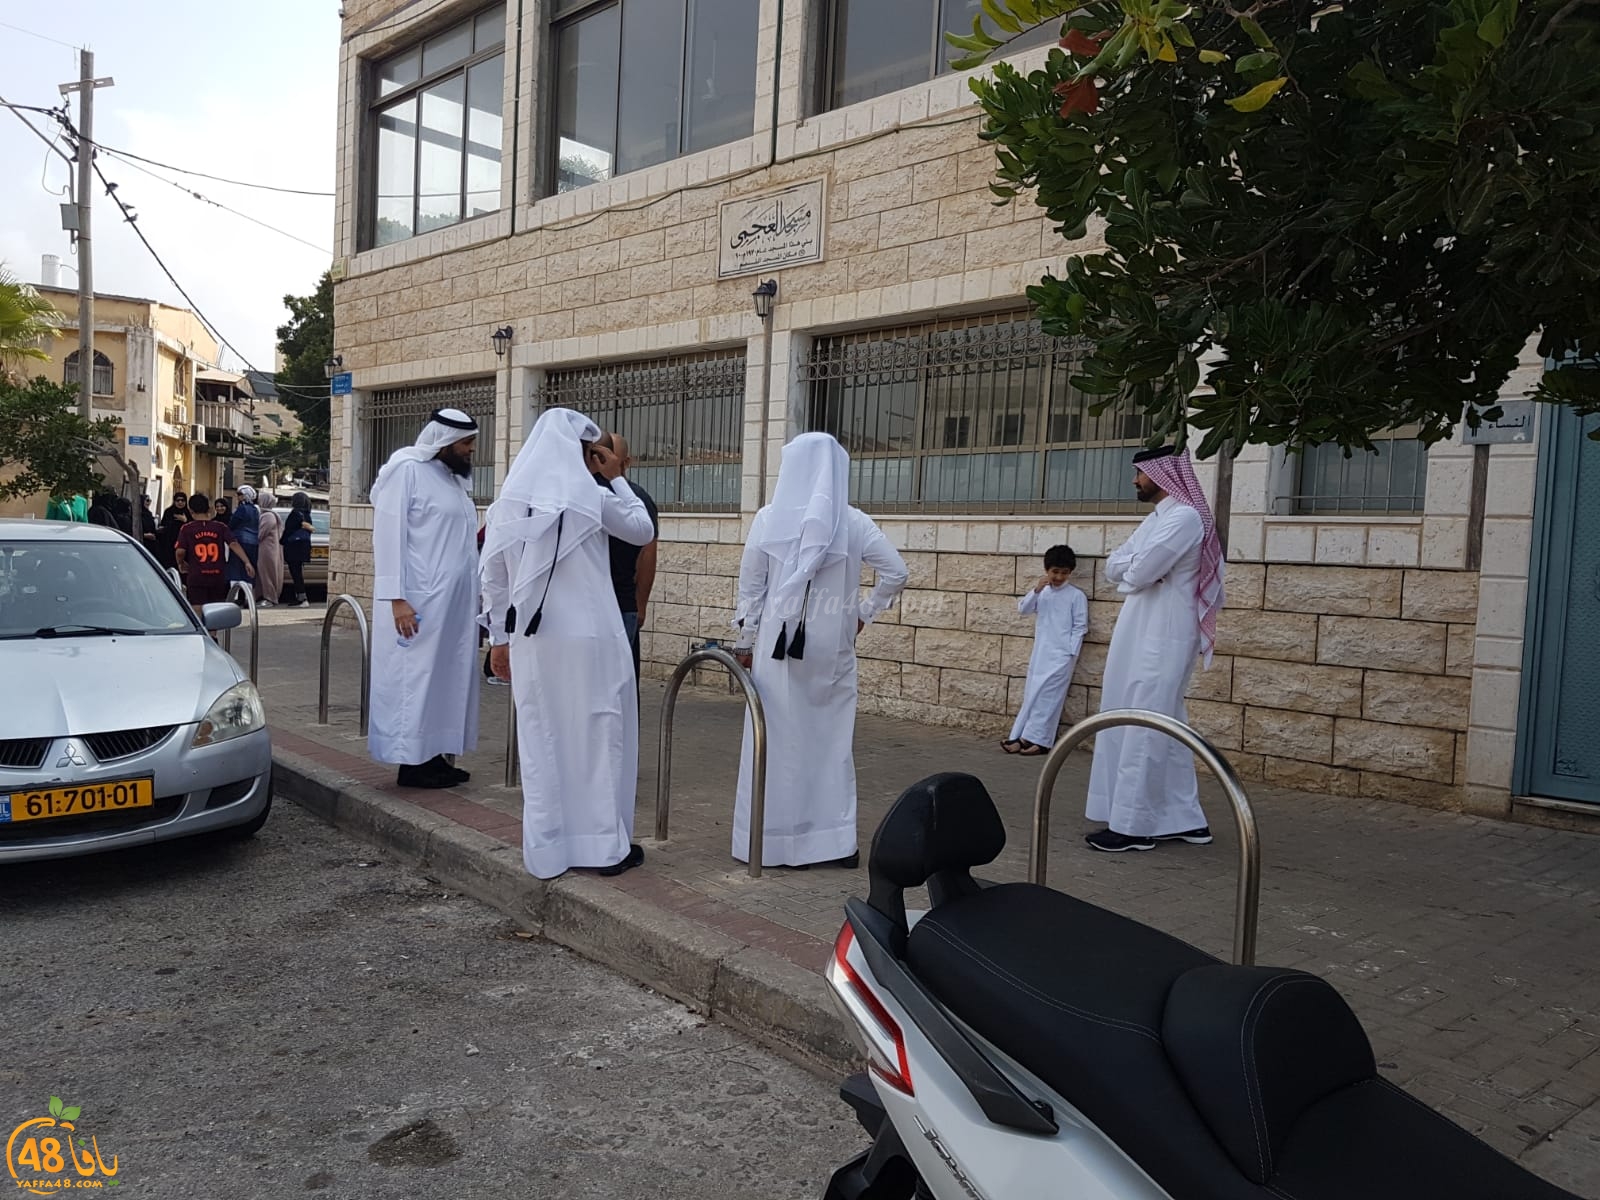  صور: ماذا يفعل الوفد الاماراتي في مدينة يافا ؟!